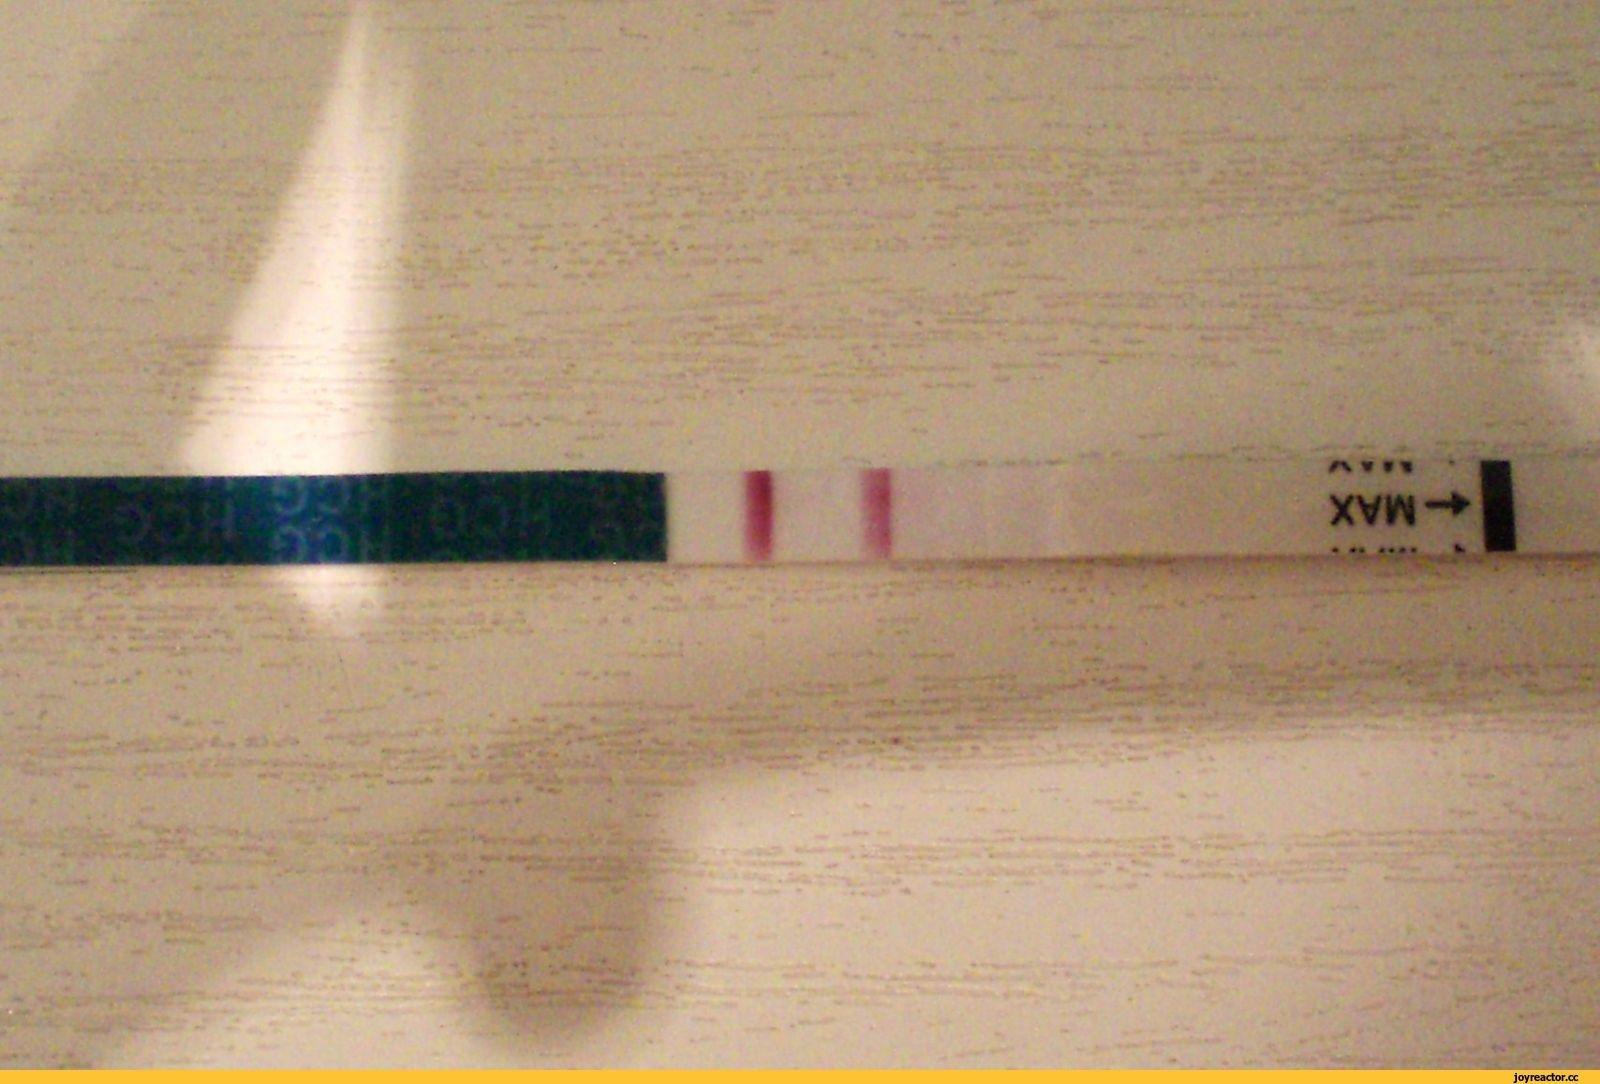 Тест на беременность на столе. Тест на беременность 2 poloska. Тест на беременность с 2 тест полосками. Тест на беременность 2 полоски фото. Тест на беременность 2 полосочки.